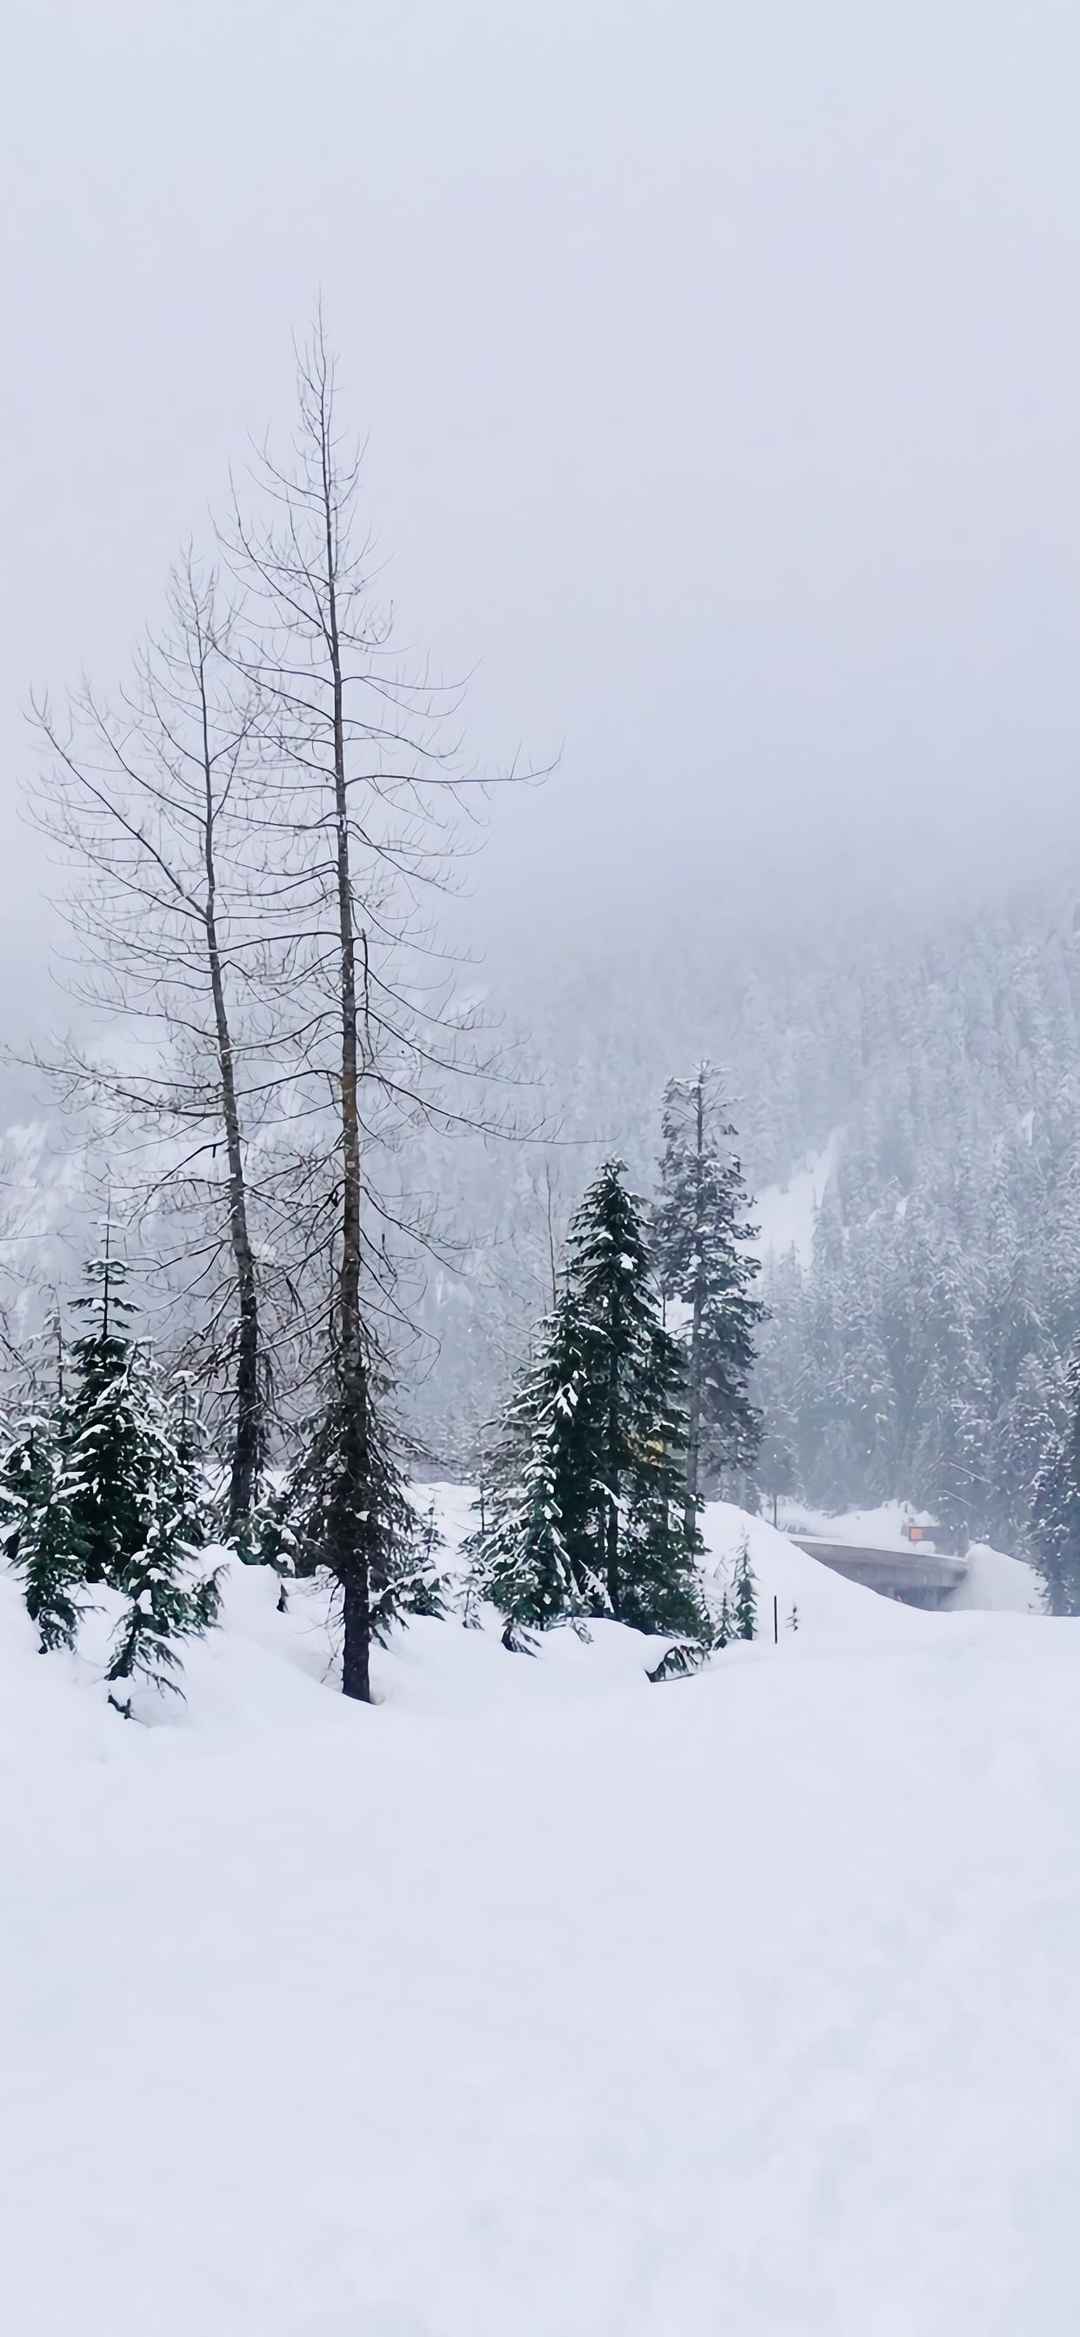 大雪美景独一无二唯美的图片-